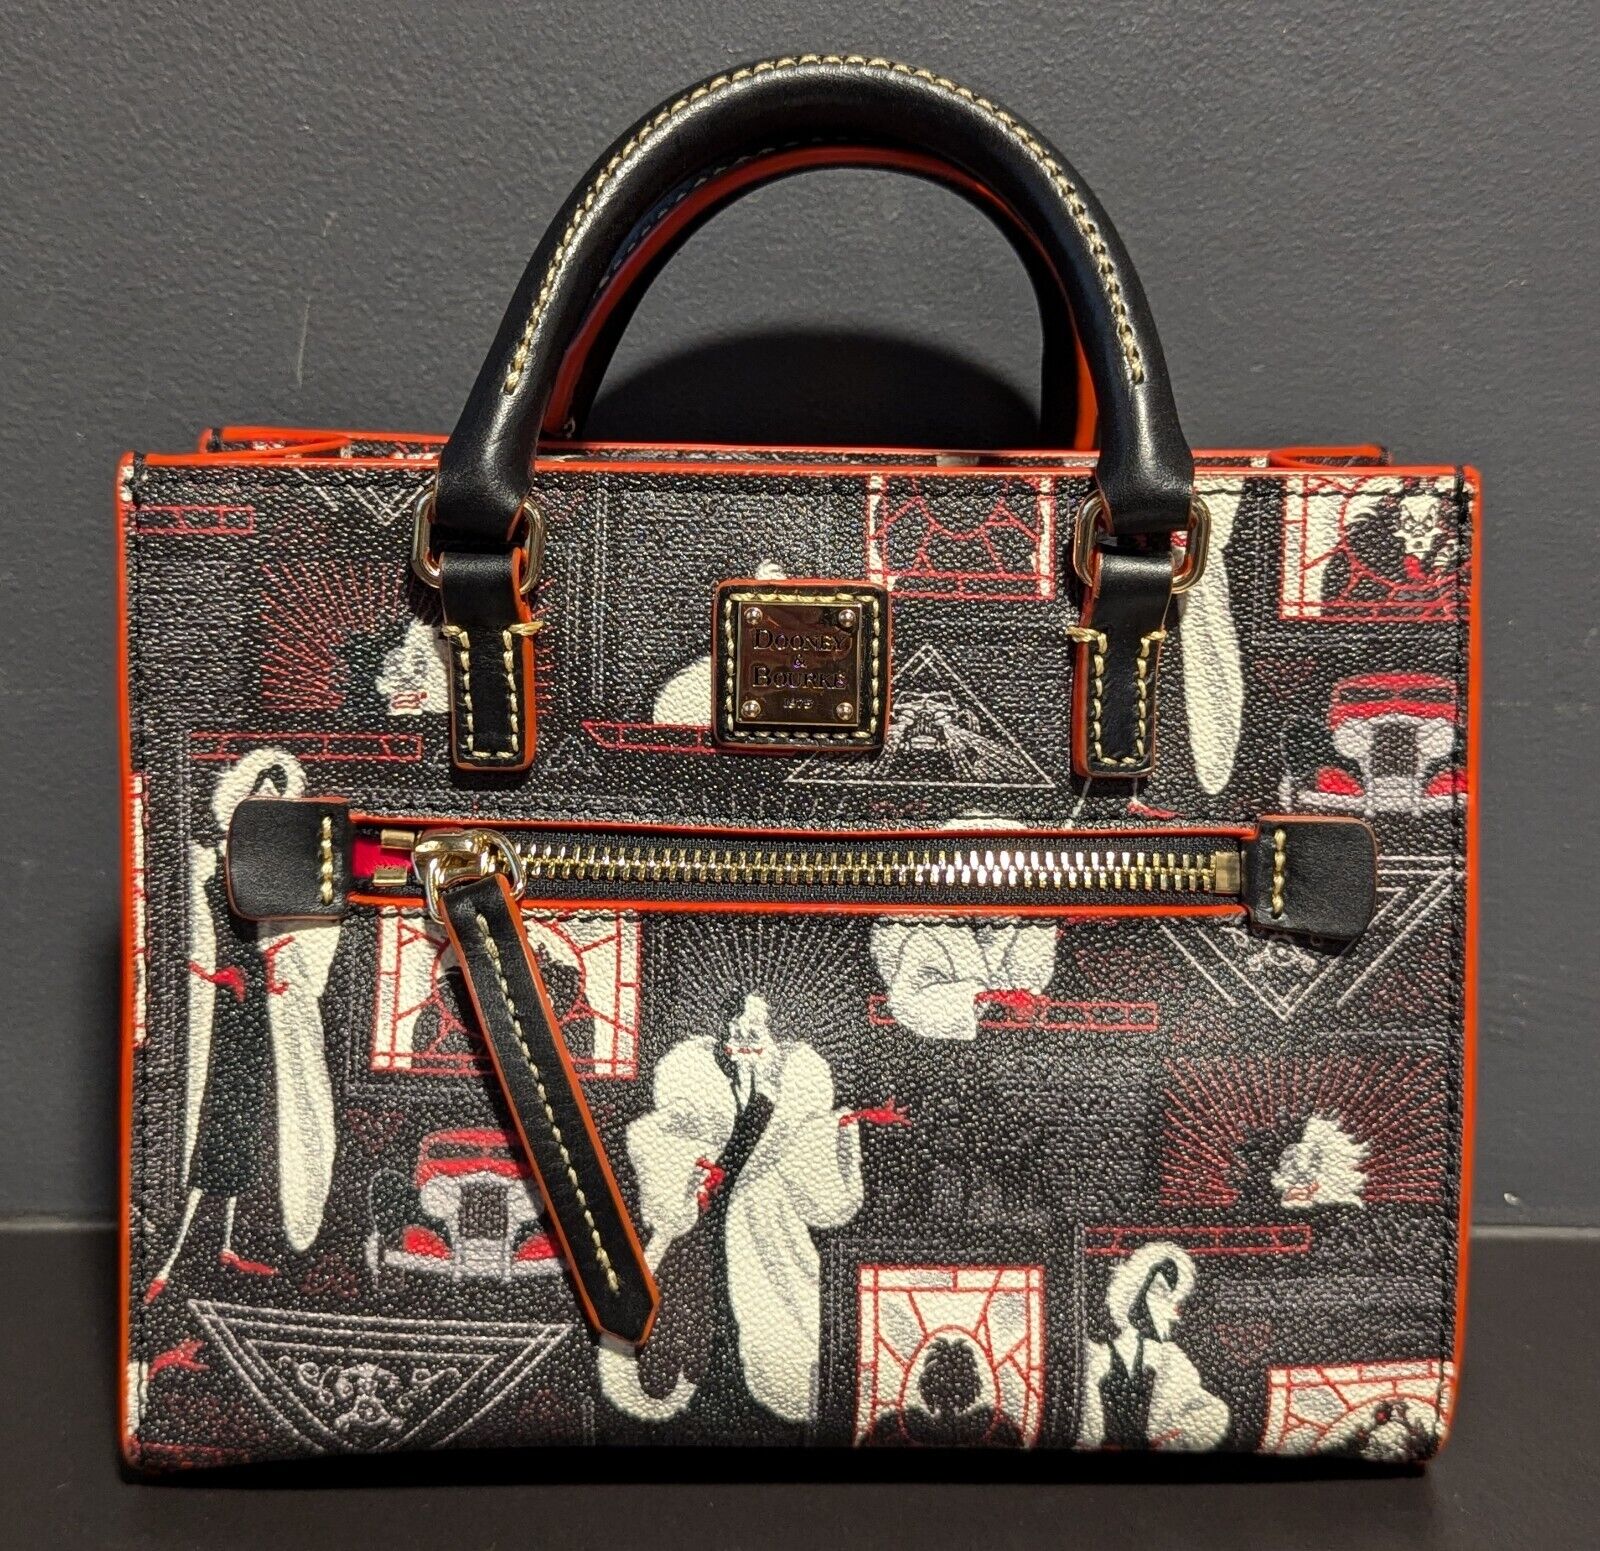 Disney Cruella De Vil Zip Crossbody Bag by Dooney & Bourke 101 Dalmatians - NEW